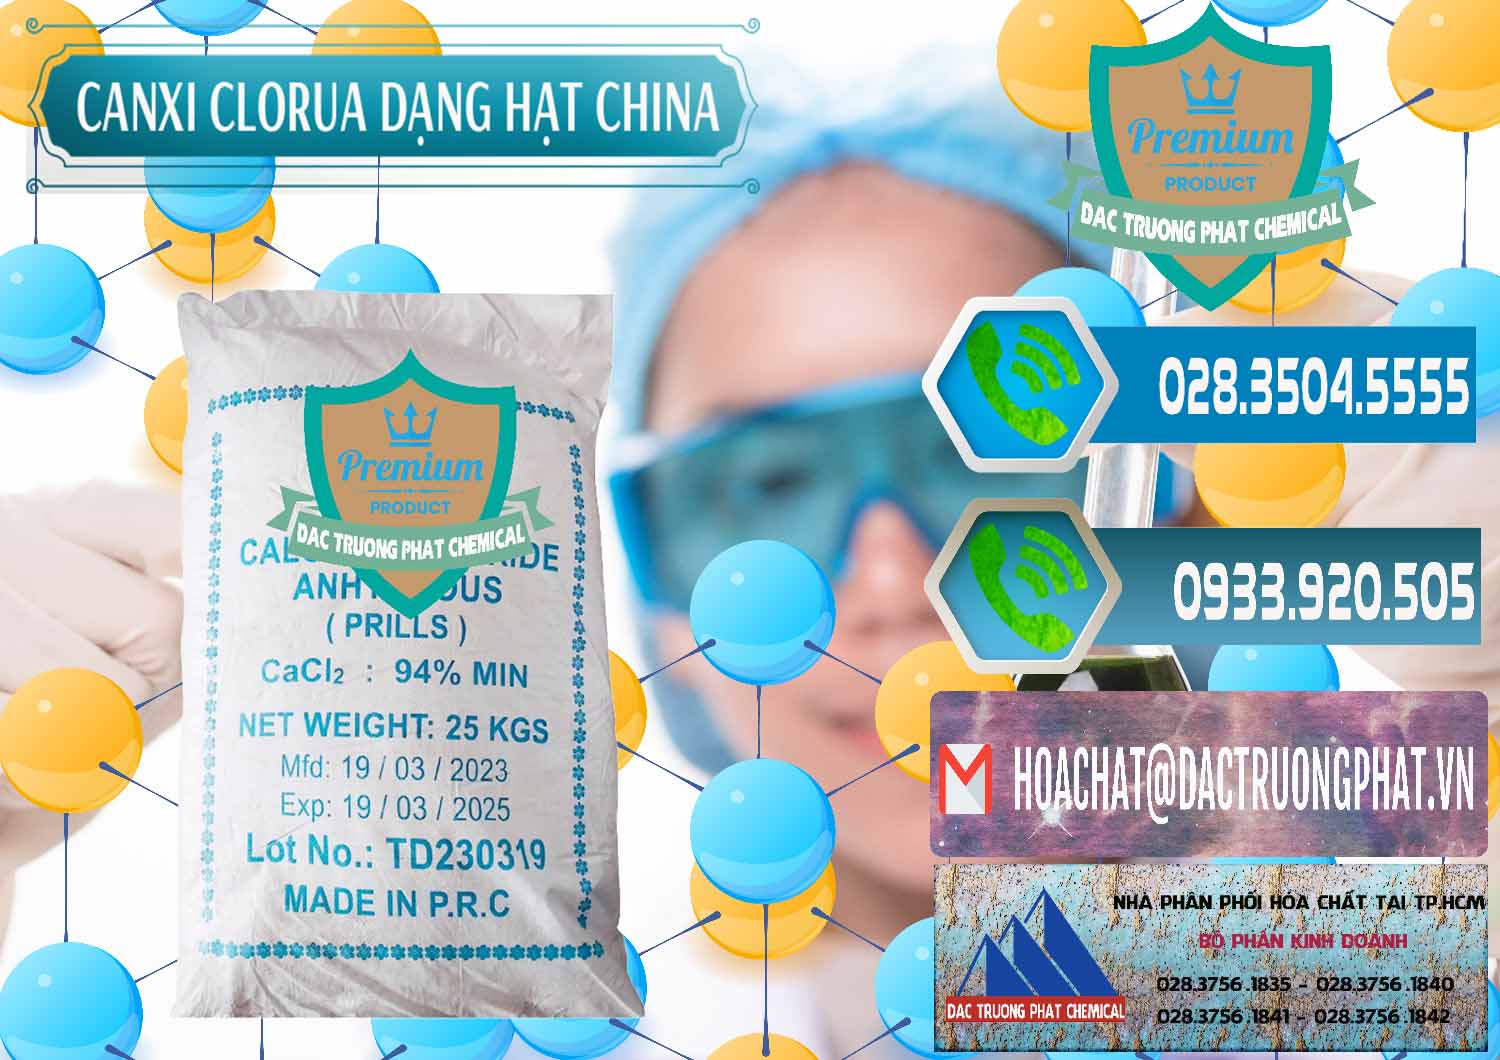 Đơn vị bán - cung ứng CaCl2 – Canxi Clorua 94% Dạng Hạt Trung Quốc China - 0373 - Nơi chuyên phân phối - cung ứng hóa chất tại TP.HCM - congtyhoachat.net